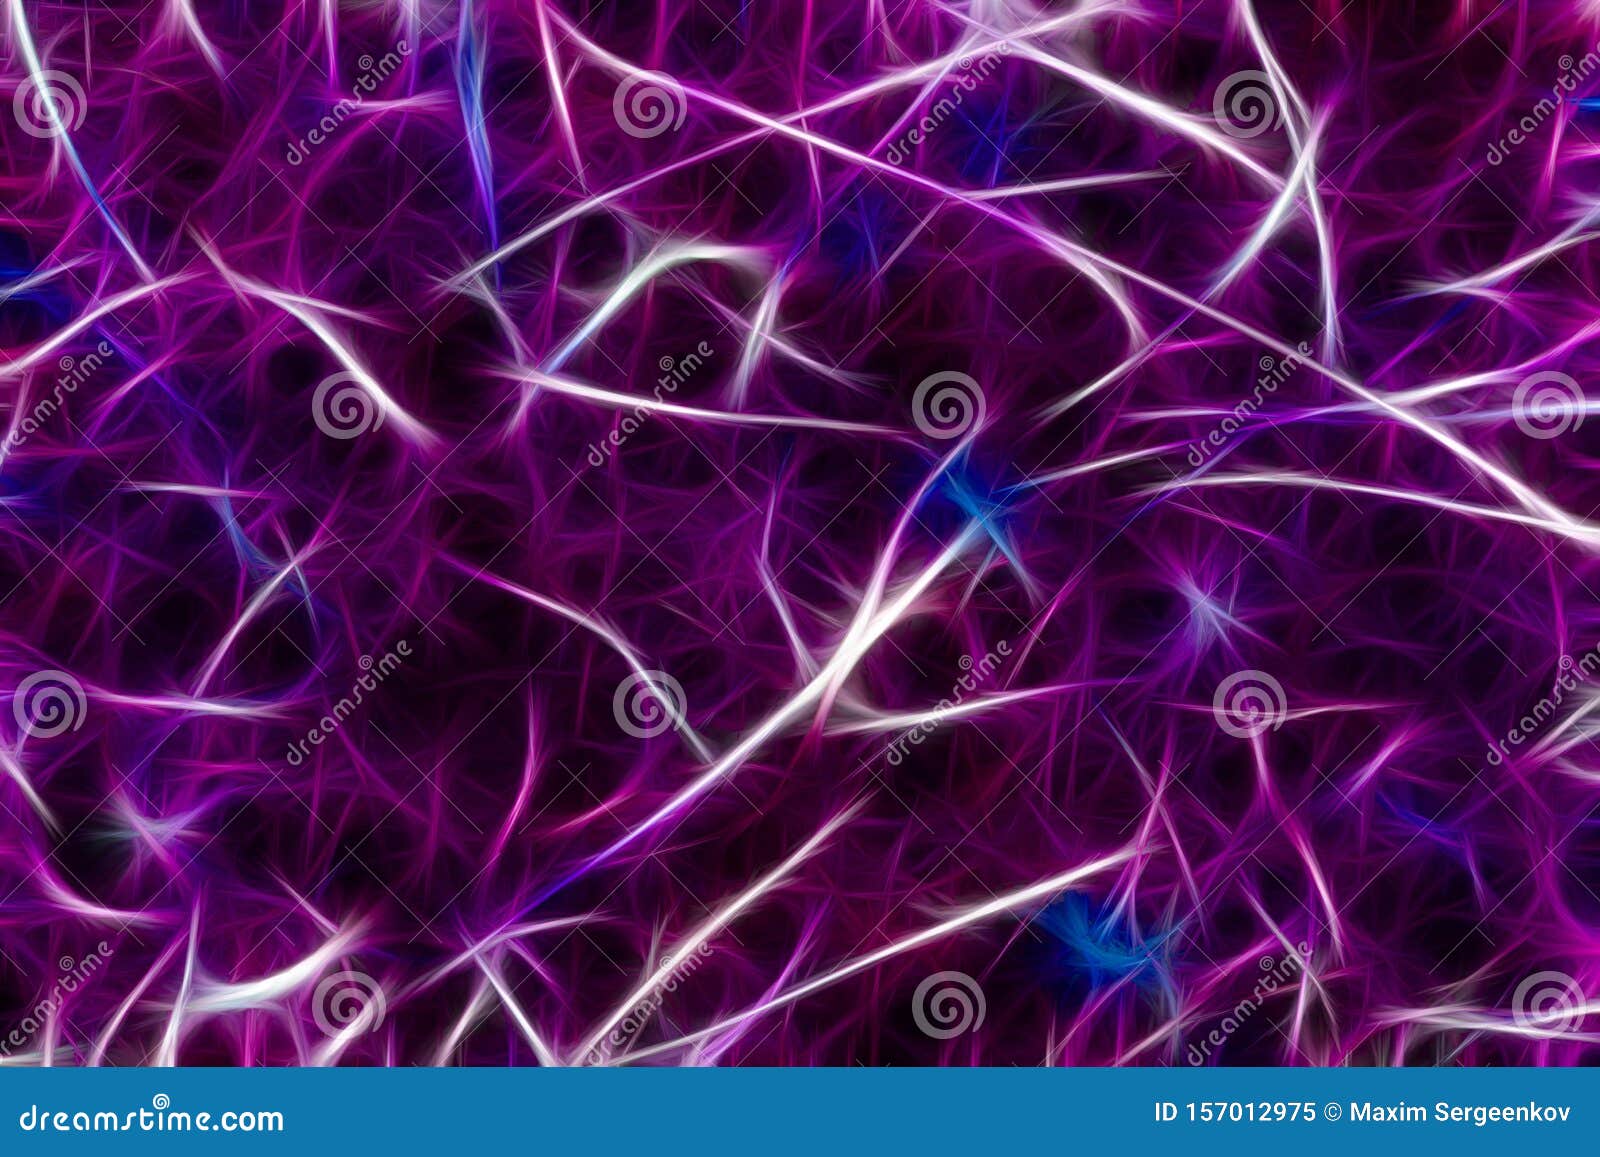 neuron brain cells background